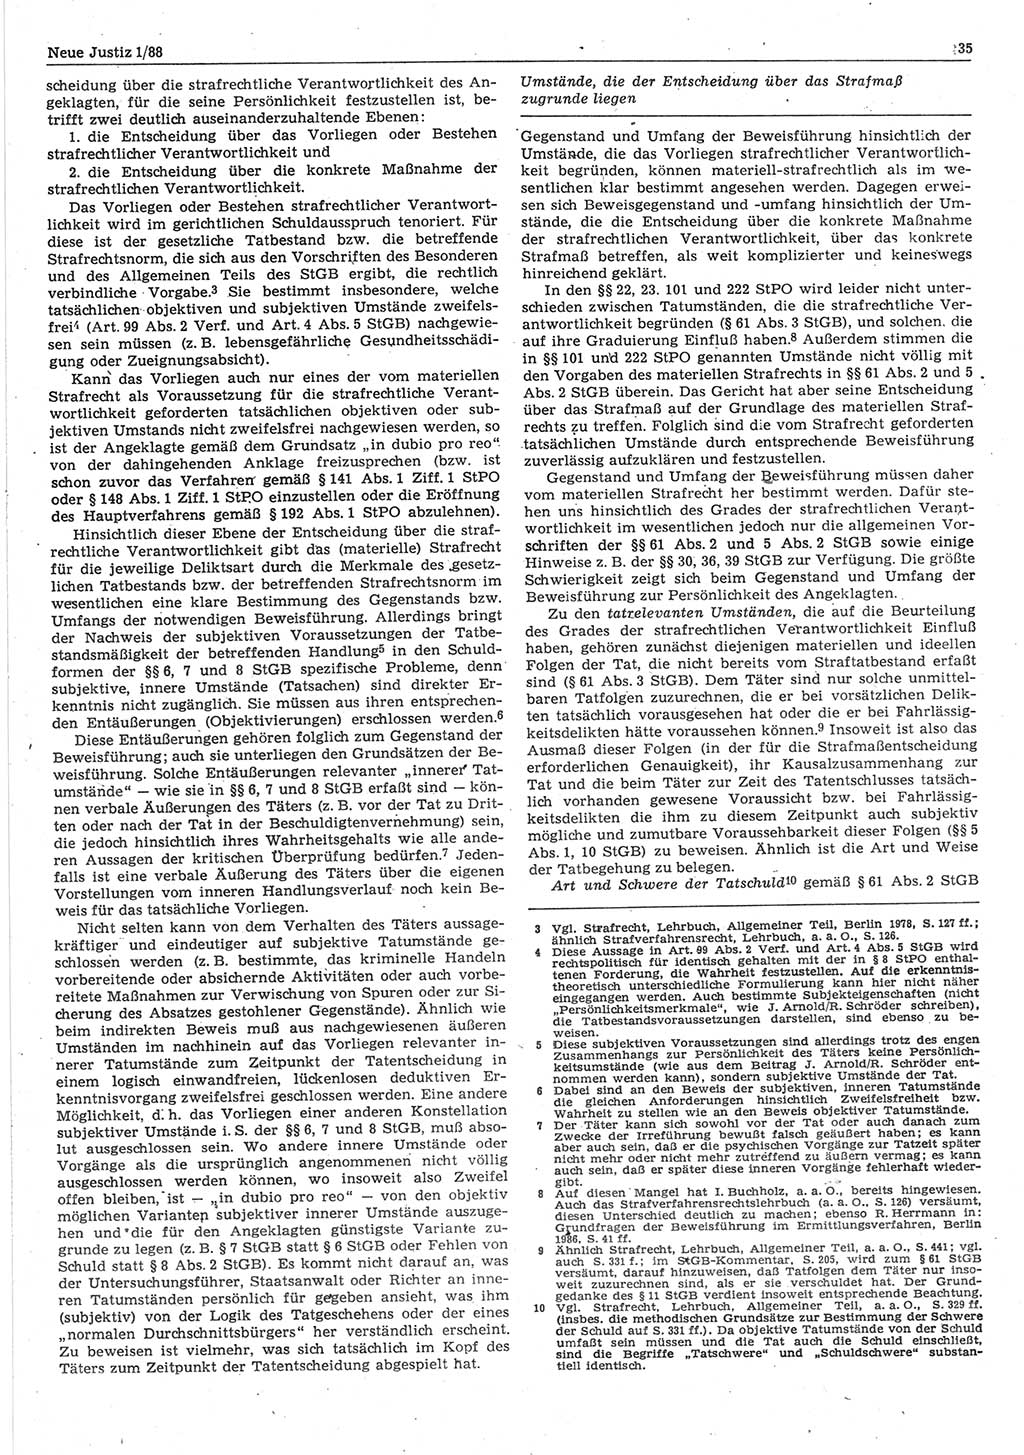 Neue Justiz (NJ), Zeitschrift für sozialistisches Recht und Gesetzlichkeit [Deutsche Demokratische Republik (DDR)], 42. Jahrgang 1988, Seite 35 (NJ DDR 1988, S. 35)